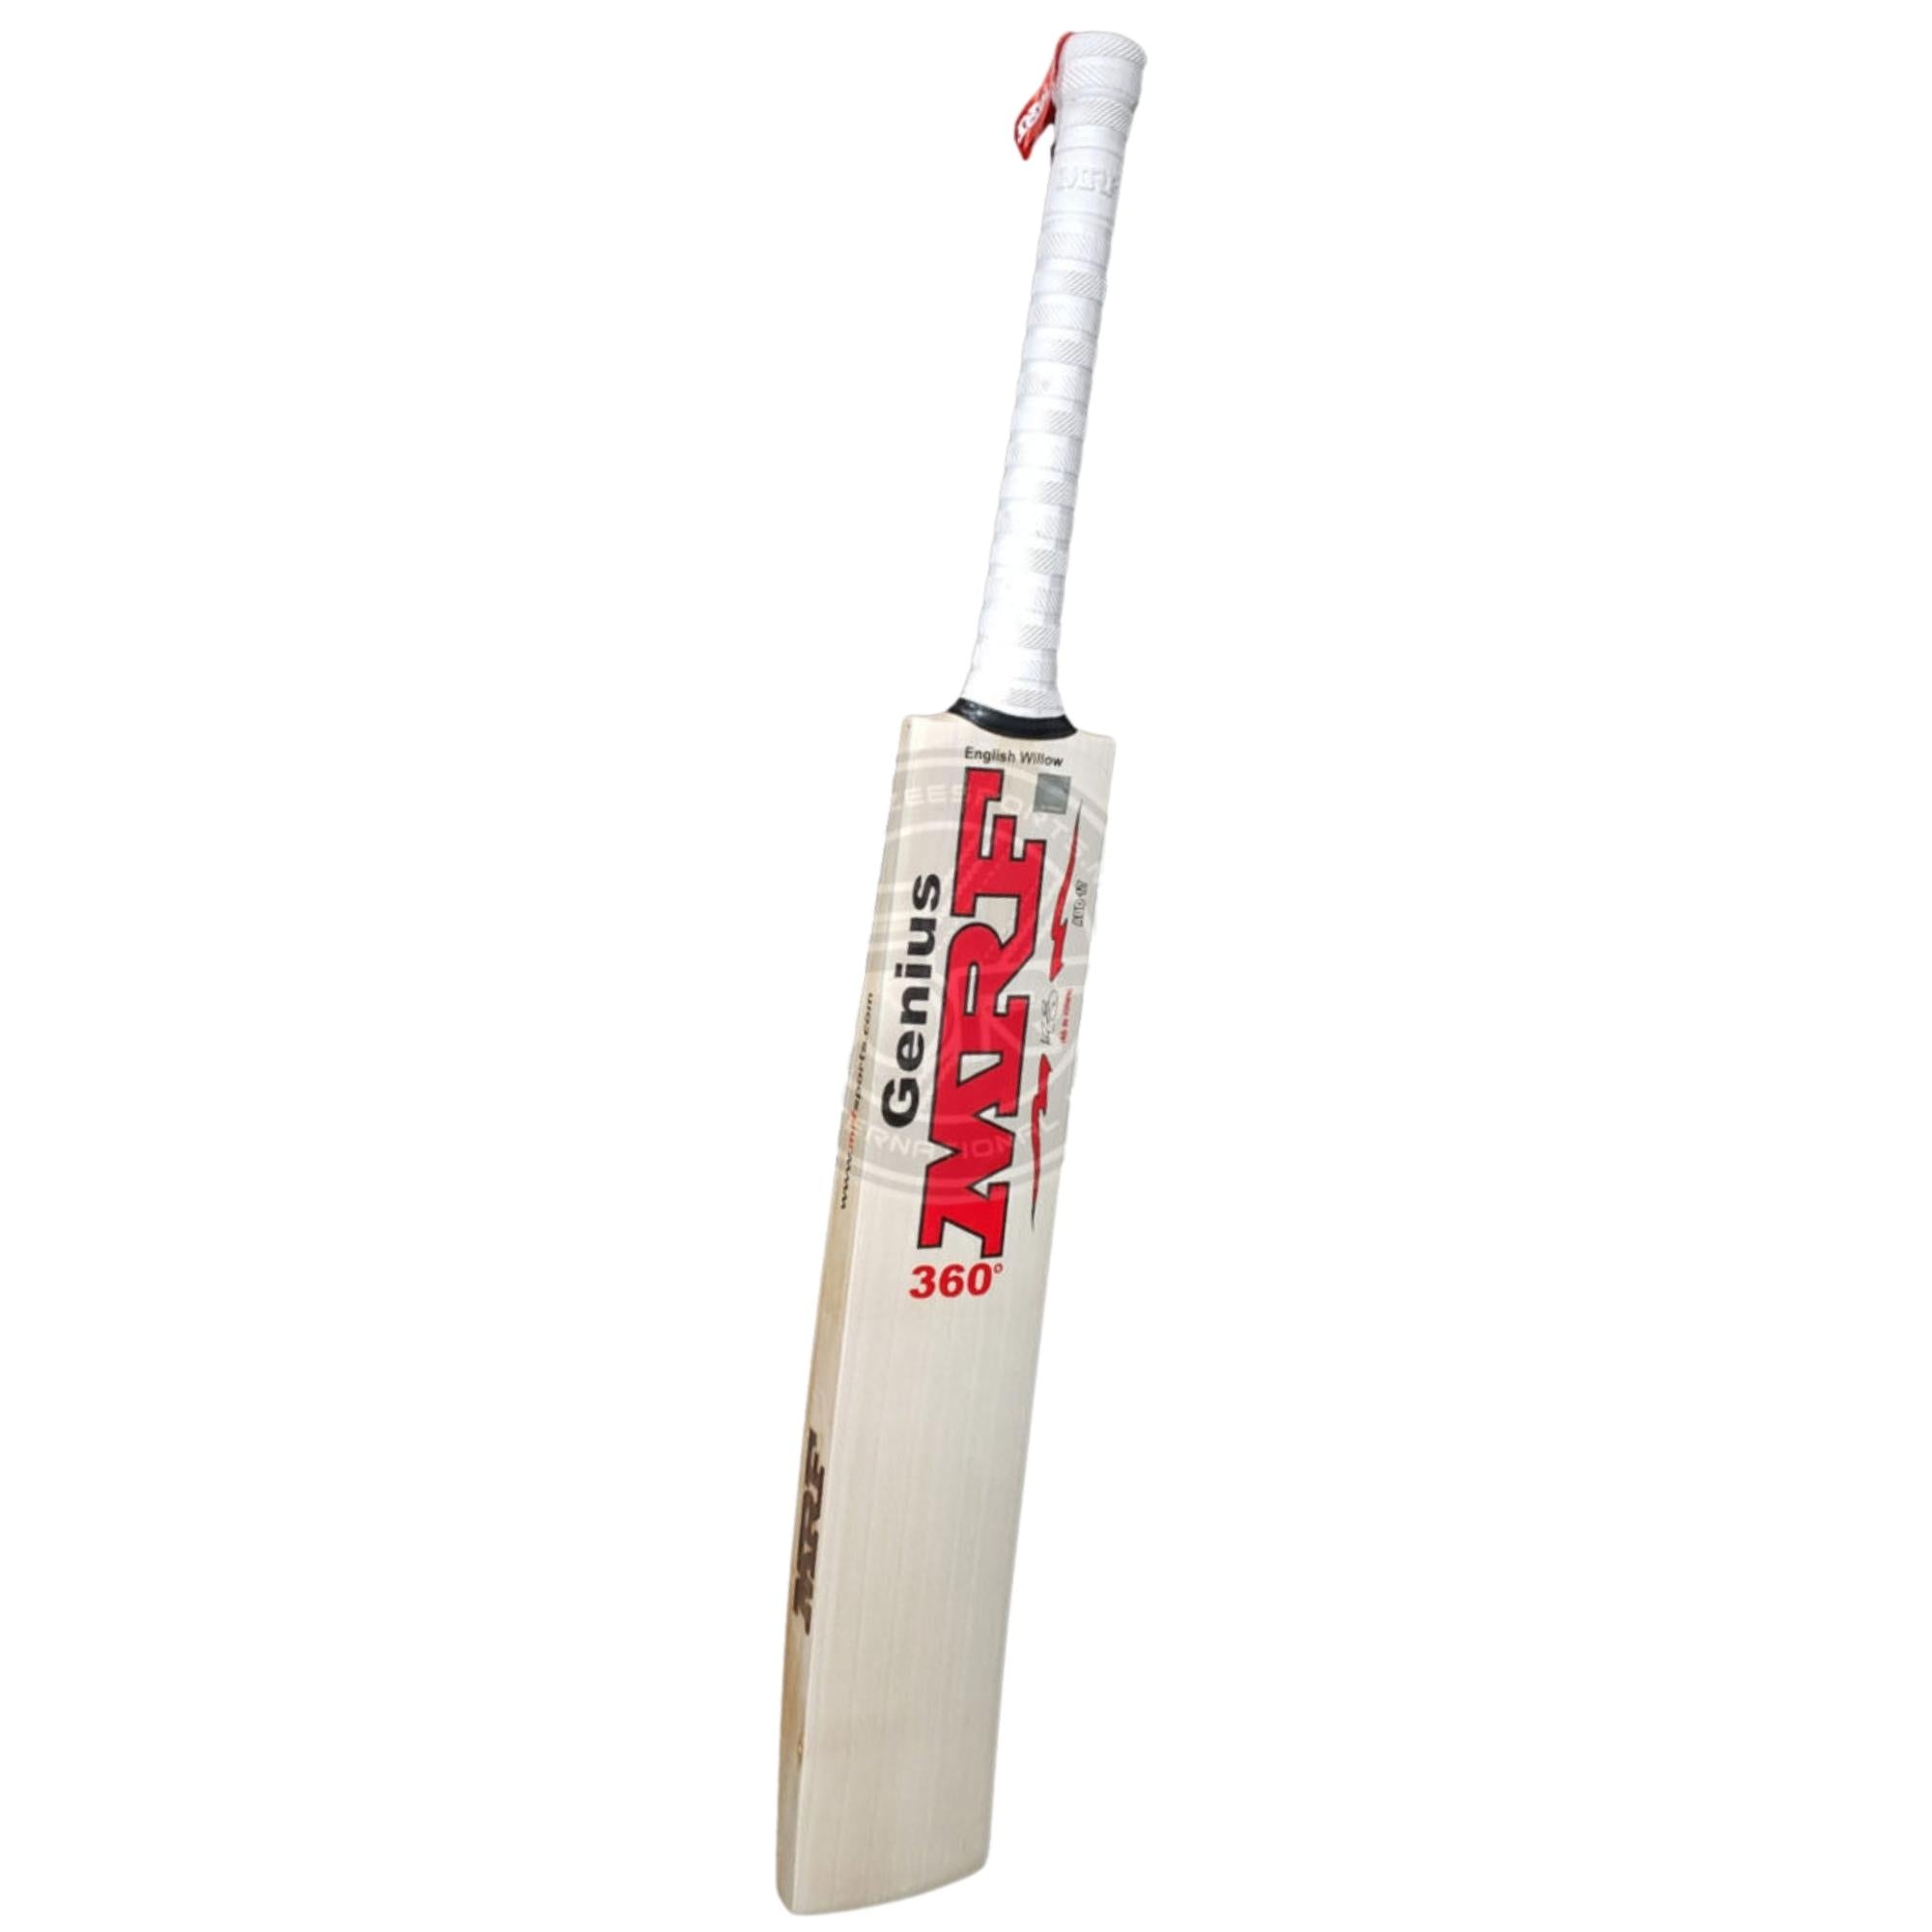 MRF Genuis 360 - AB de Villiers Player's Cricket Bat